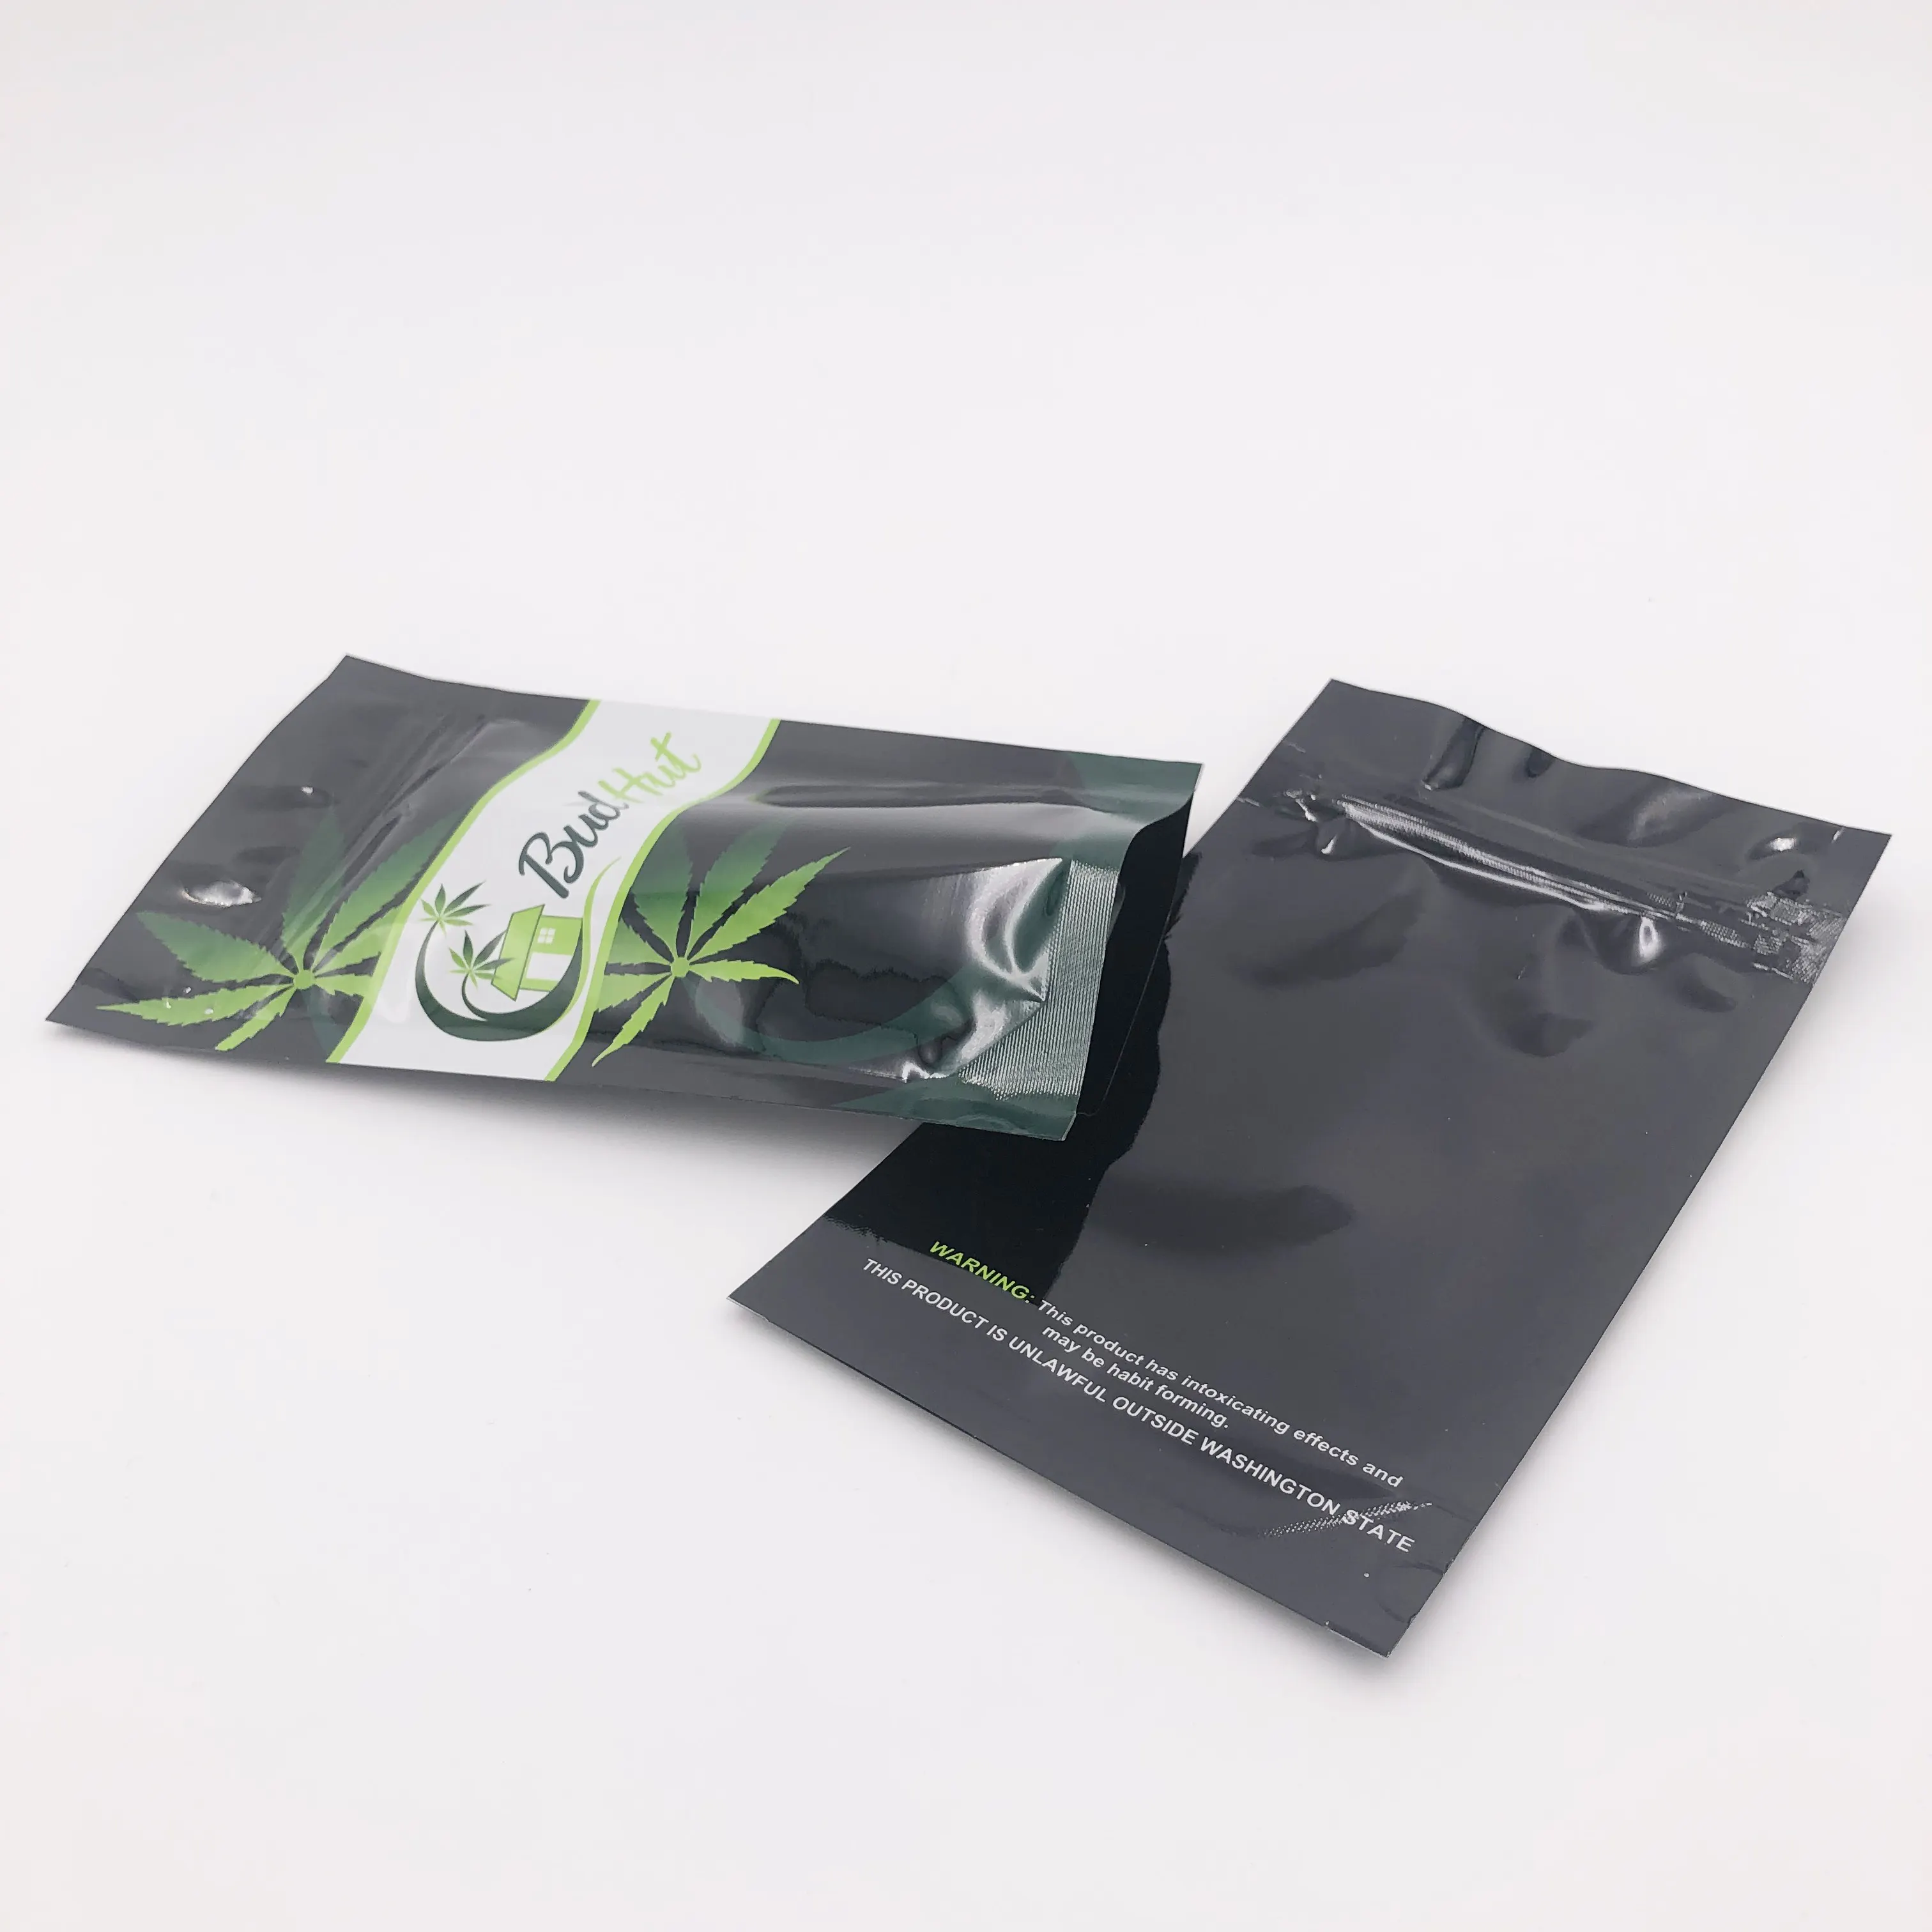 Costume impresso mylar plástico comida embalagem saco fornecedor